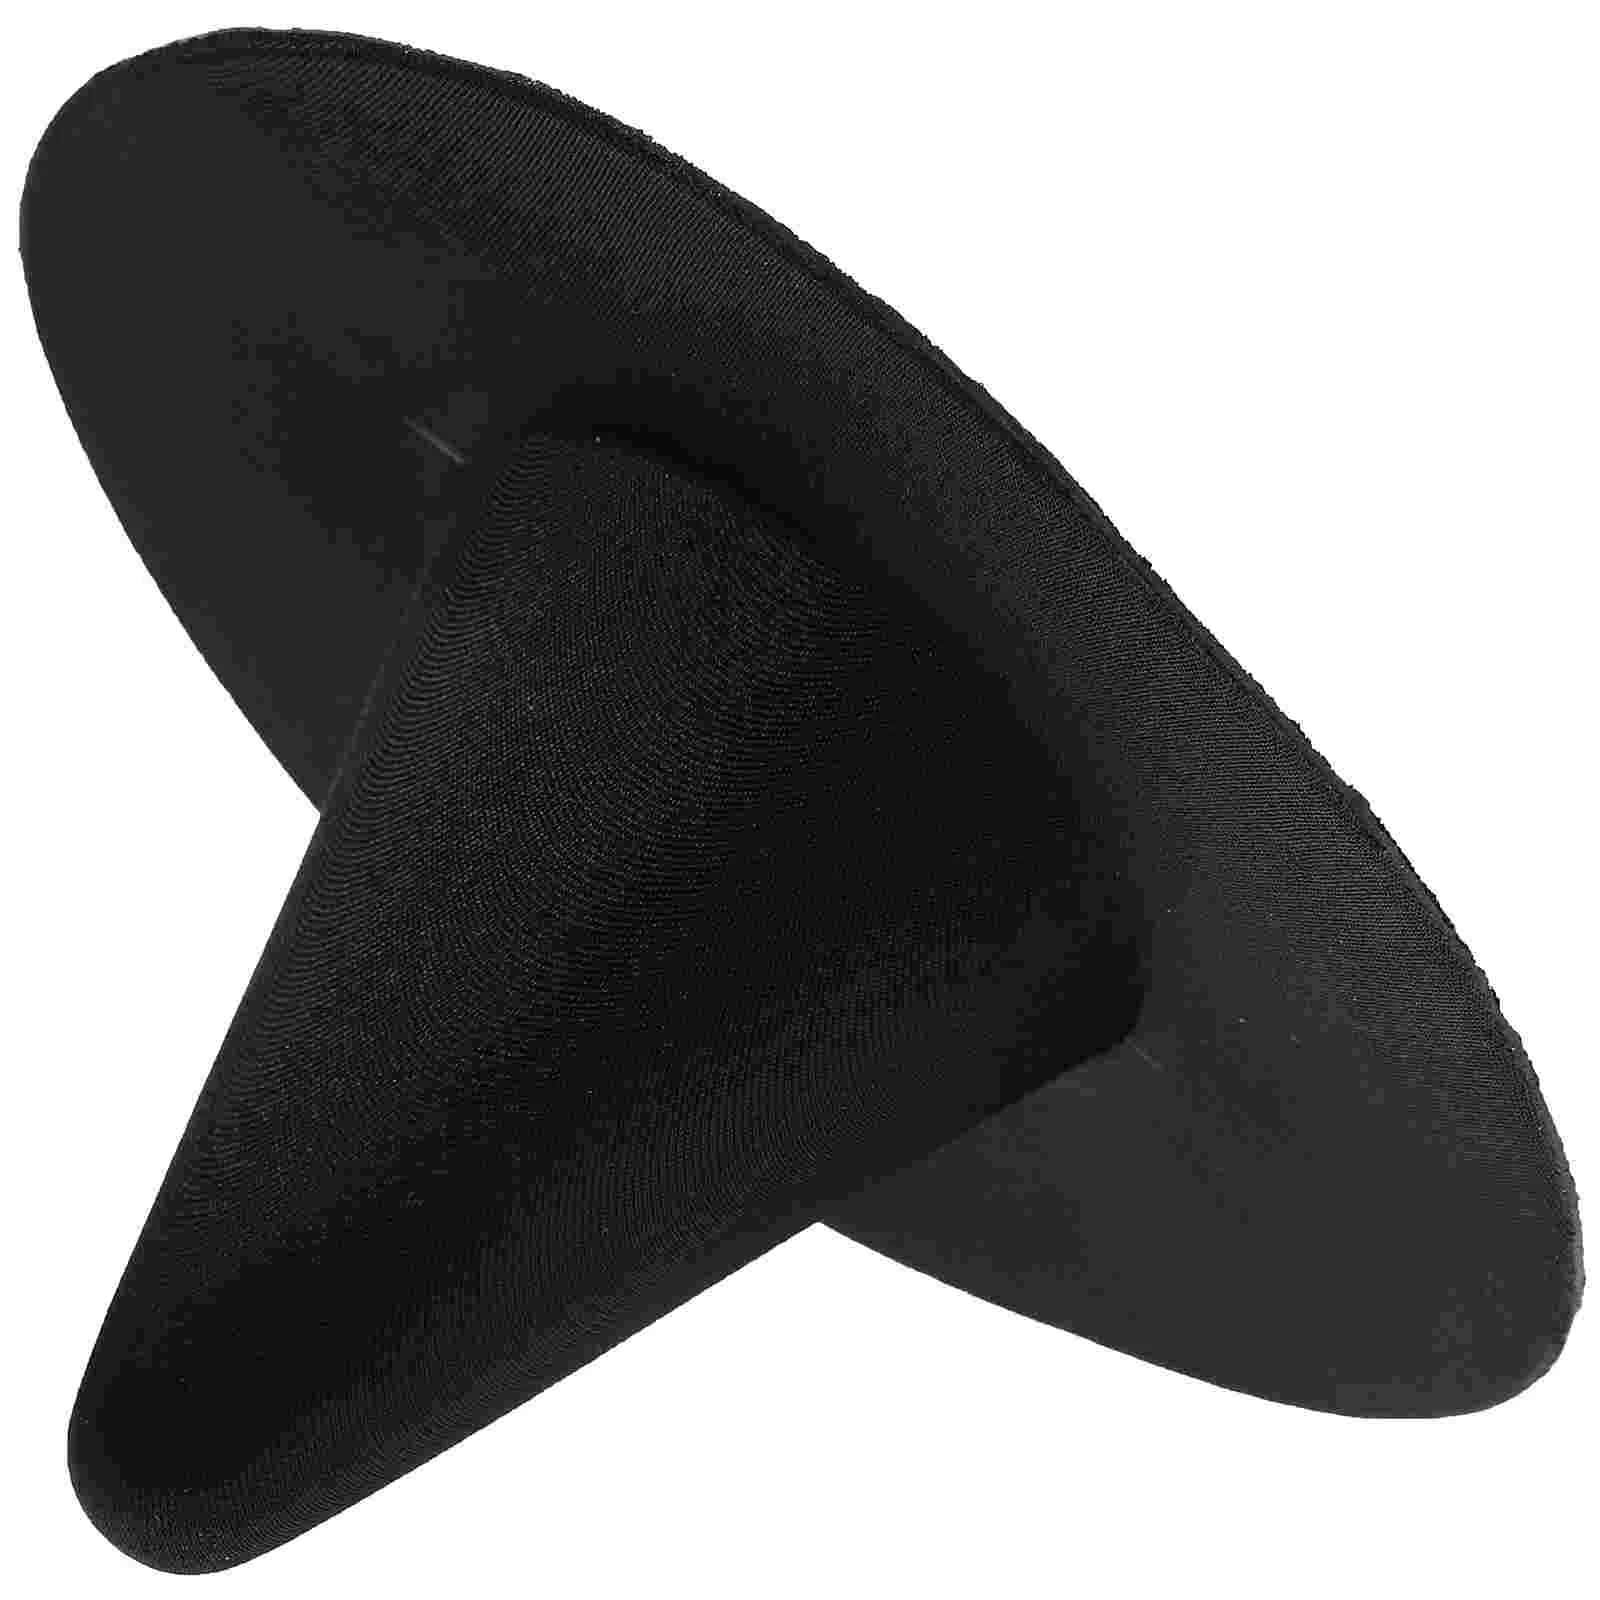 Декоративная шляпа ведьмы, крошечные мини-шляпы, миниатюрные аксессуары для ведьм